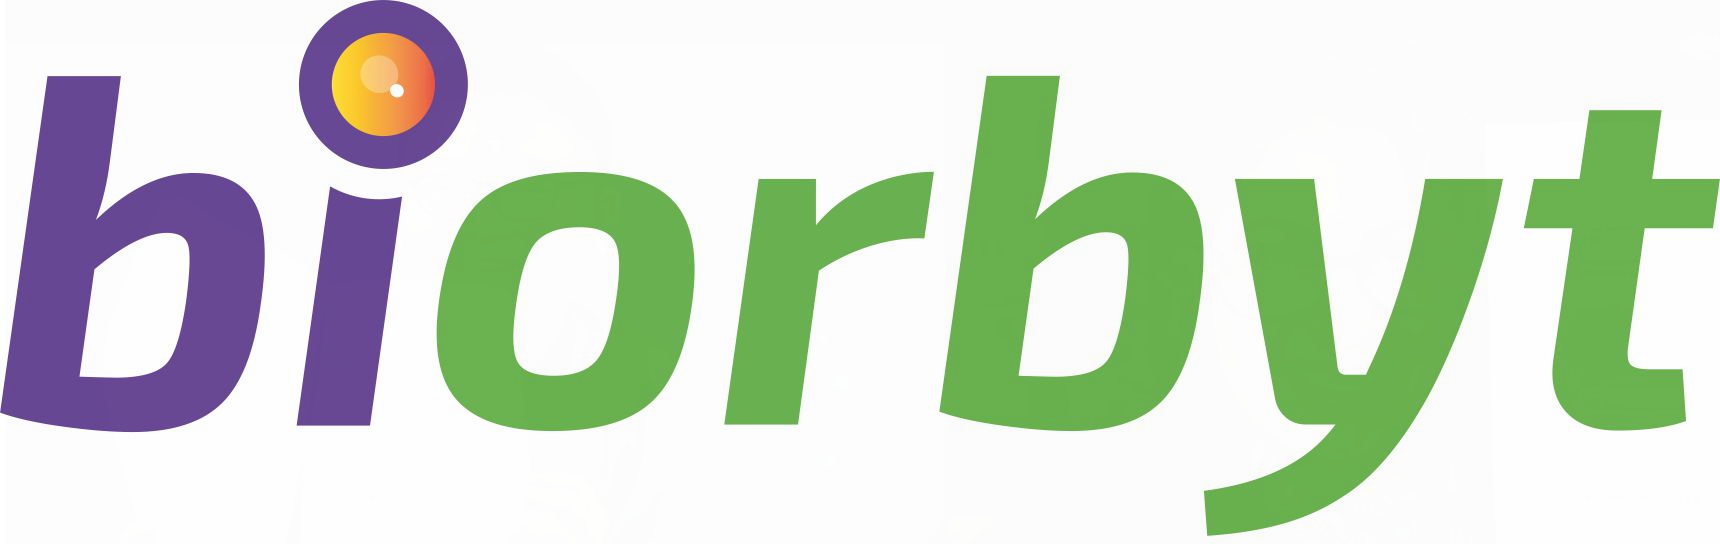 biorbyt-high-res-logo-tsis muaj-strapline